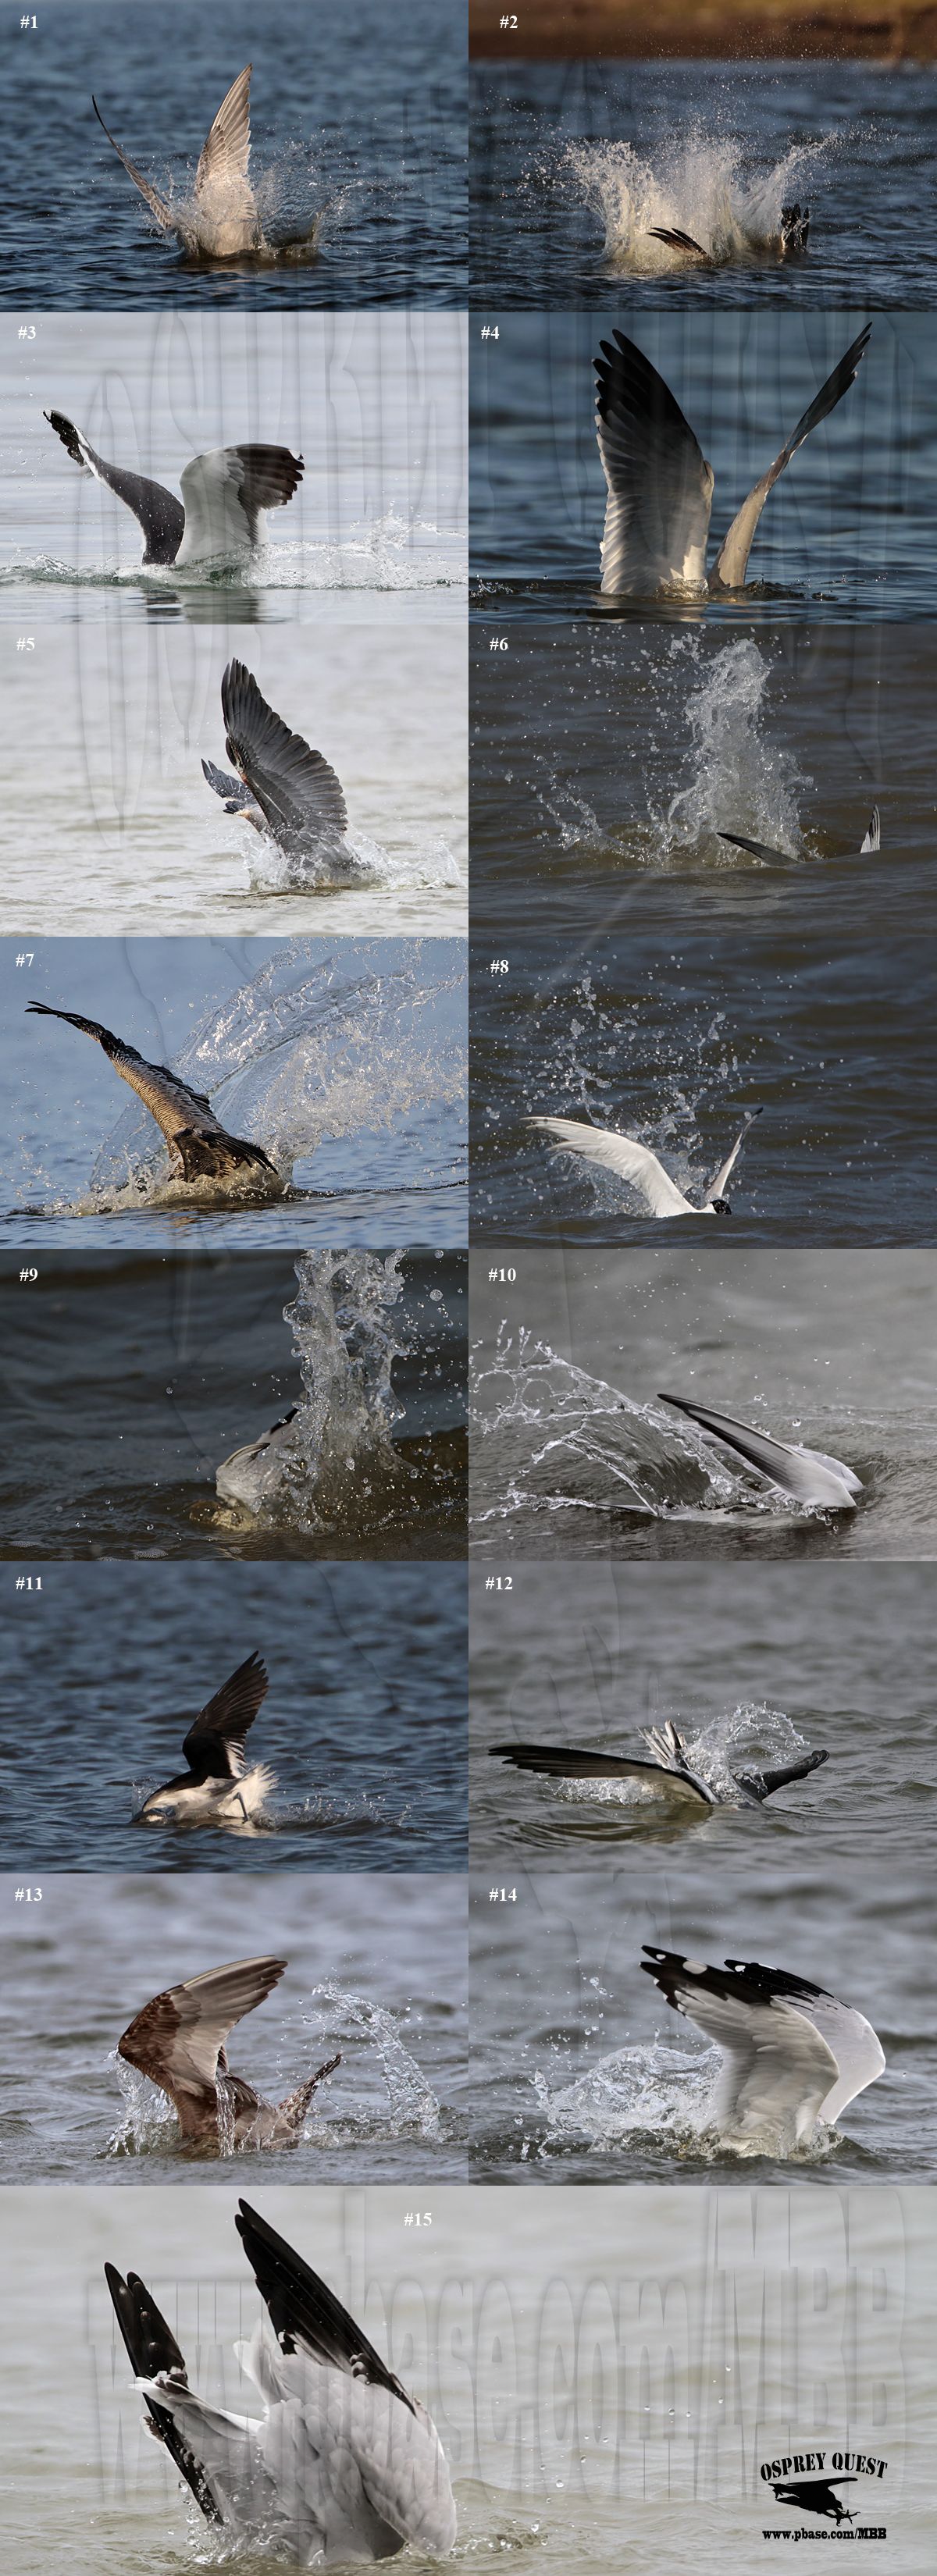 Avian species plunging into water.jpg